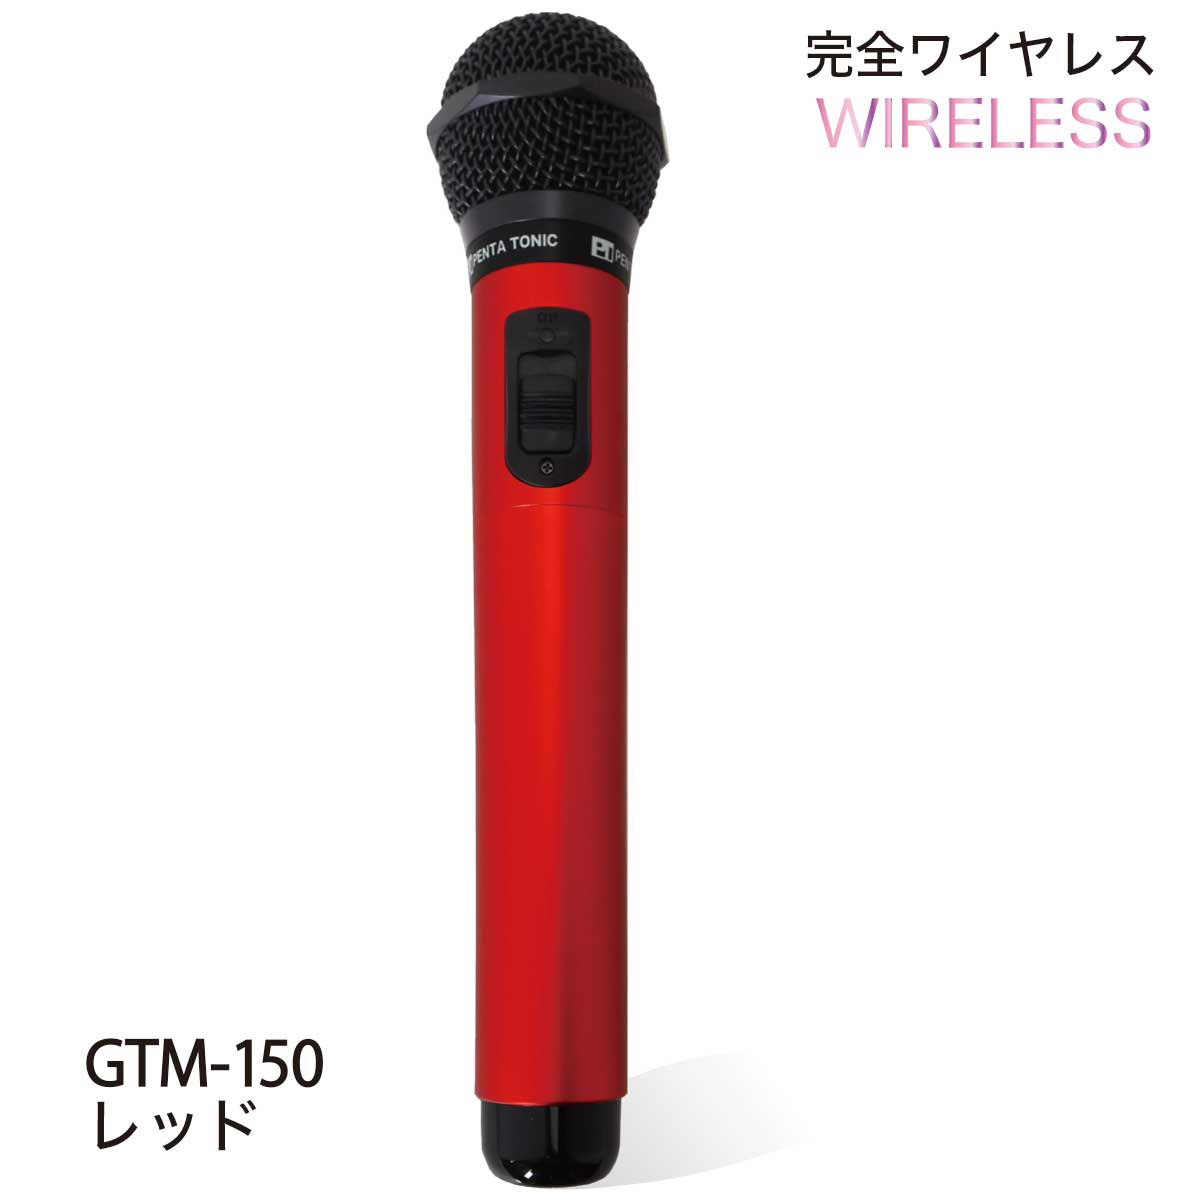 PENTATONIC GTM-150 レッド カラオケマイマイク カラオケ用マイク